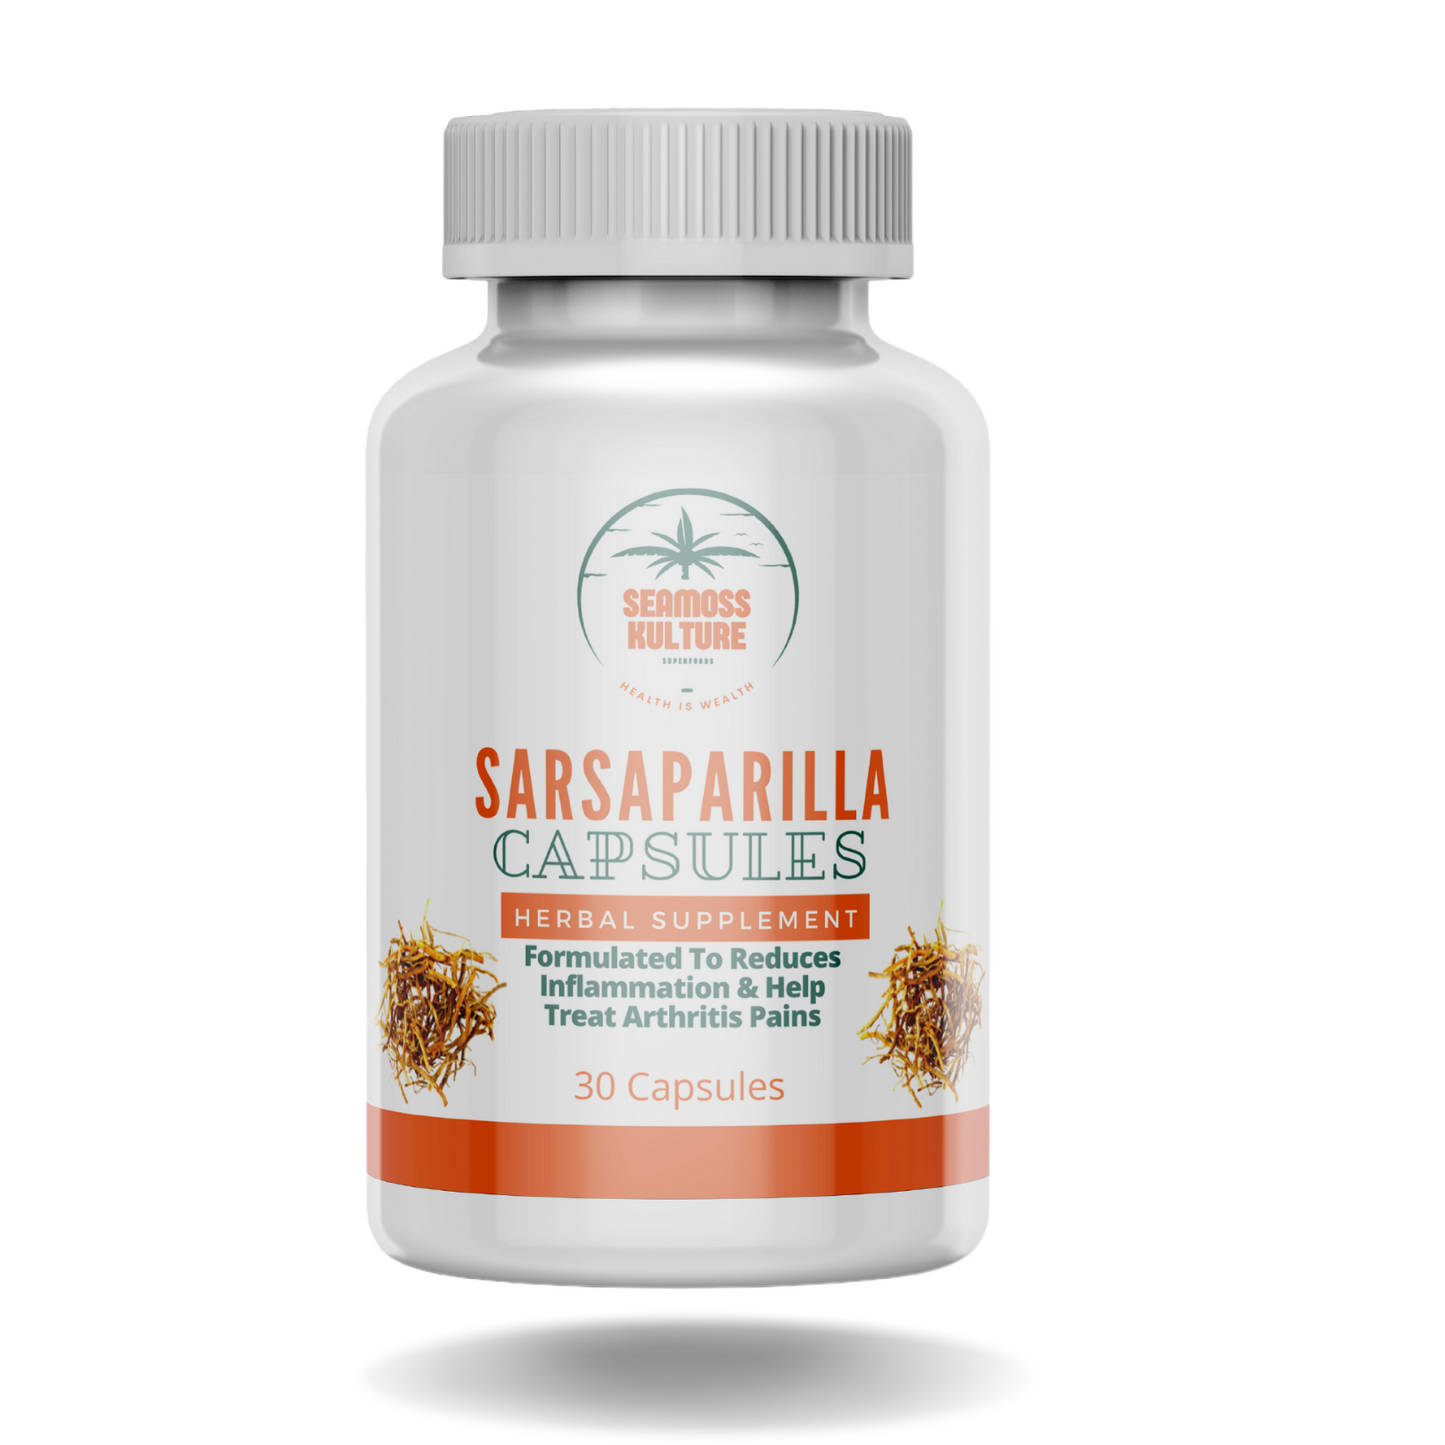 Sarsaparilla Capsules